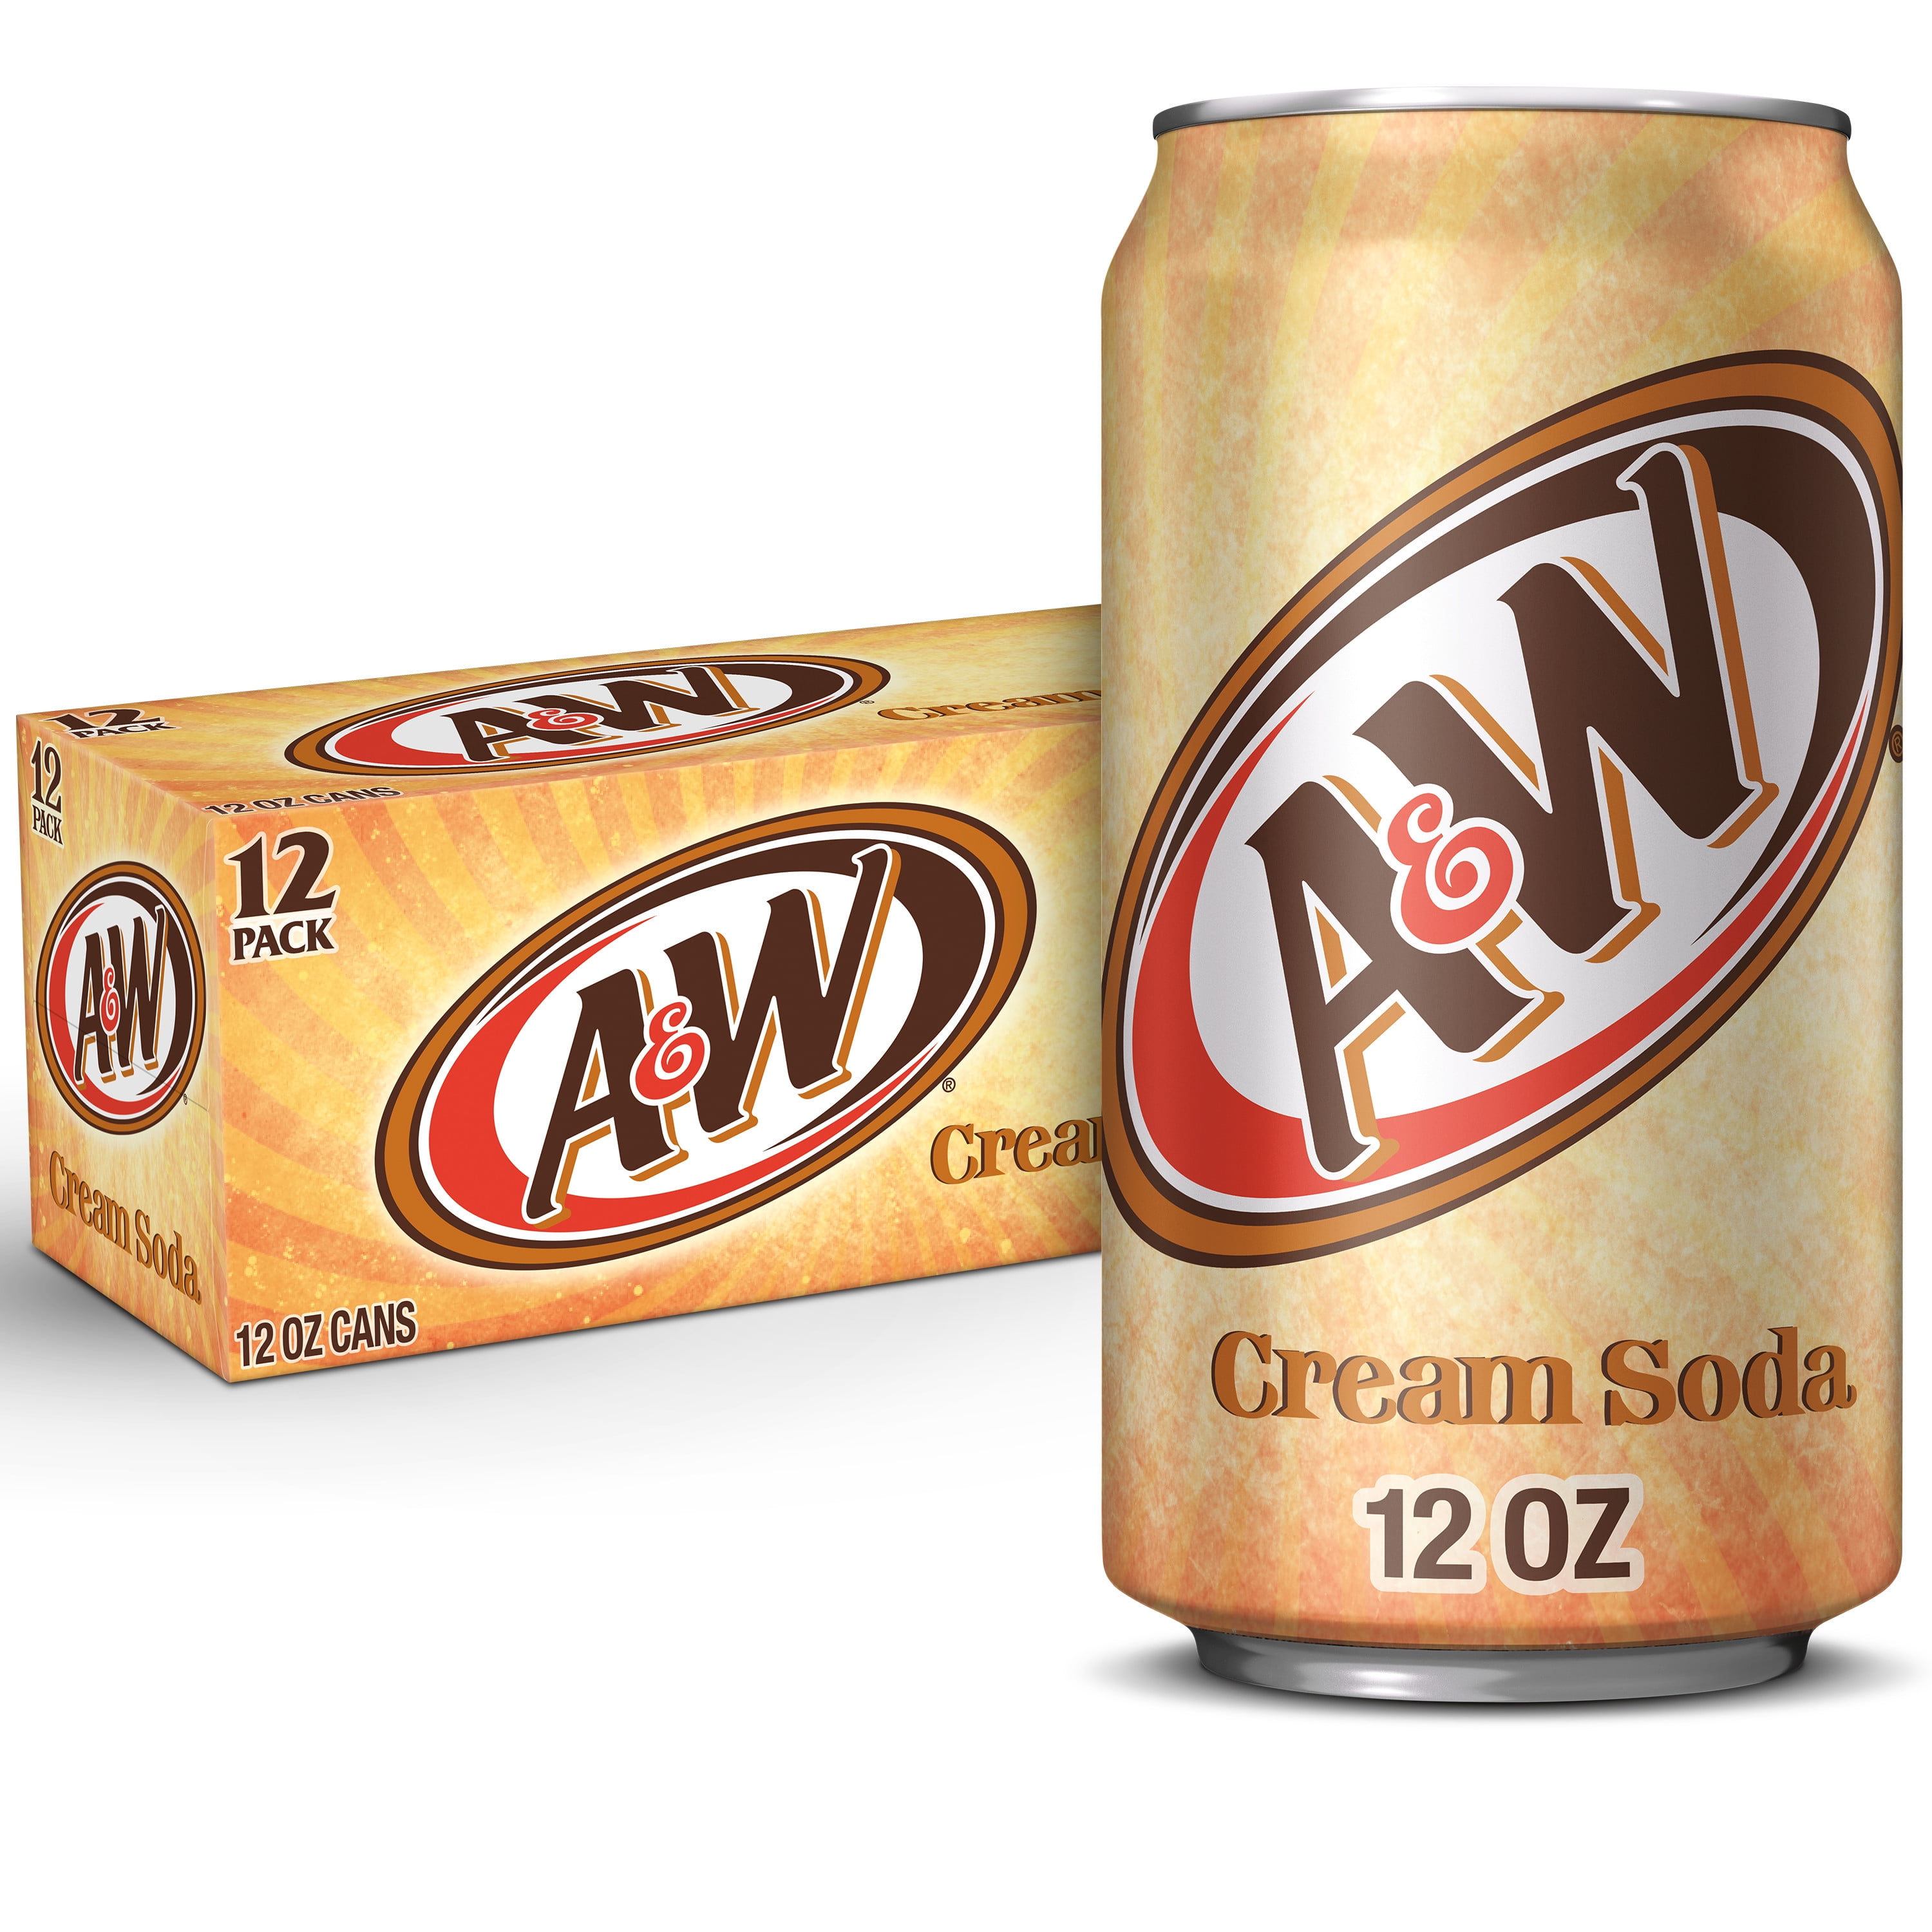 Buy Aandw Cream Soda 12 Fl Oz Cans 12 Pack Online At Lowest Price In Ubuy Nepal 23711723